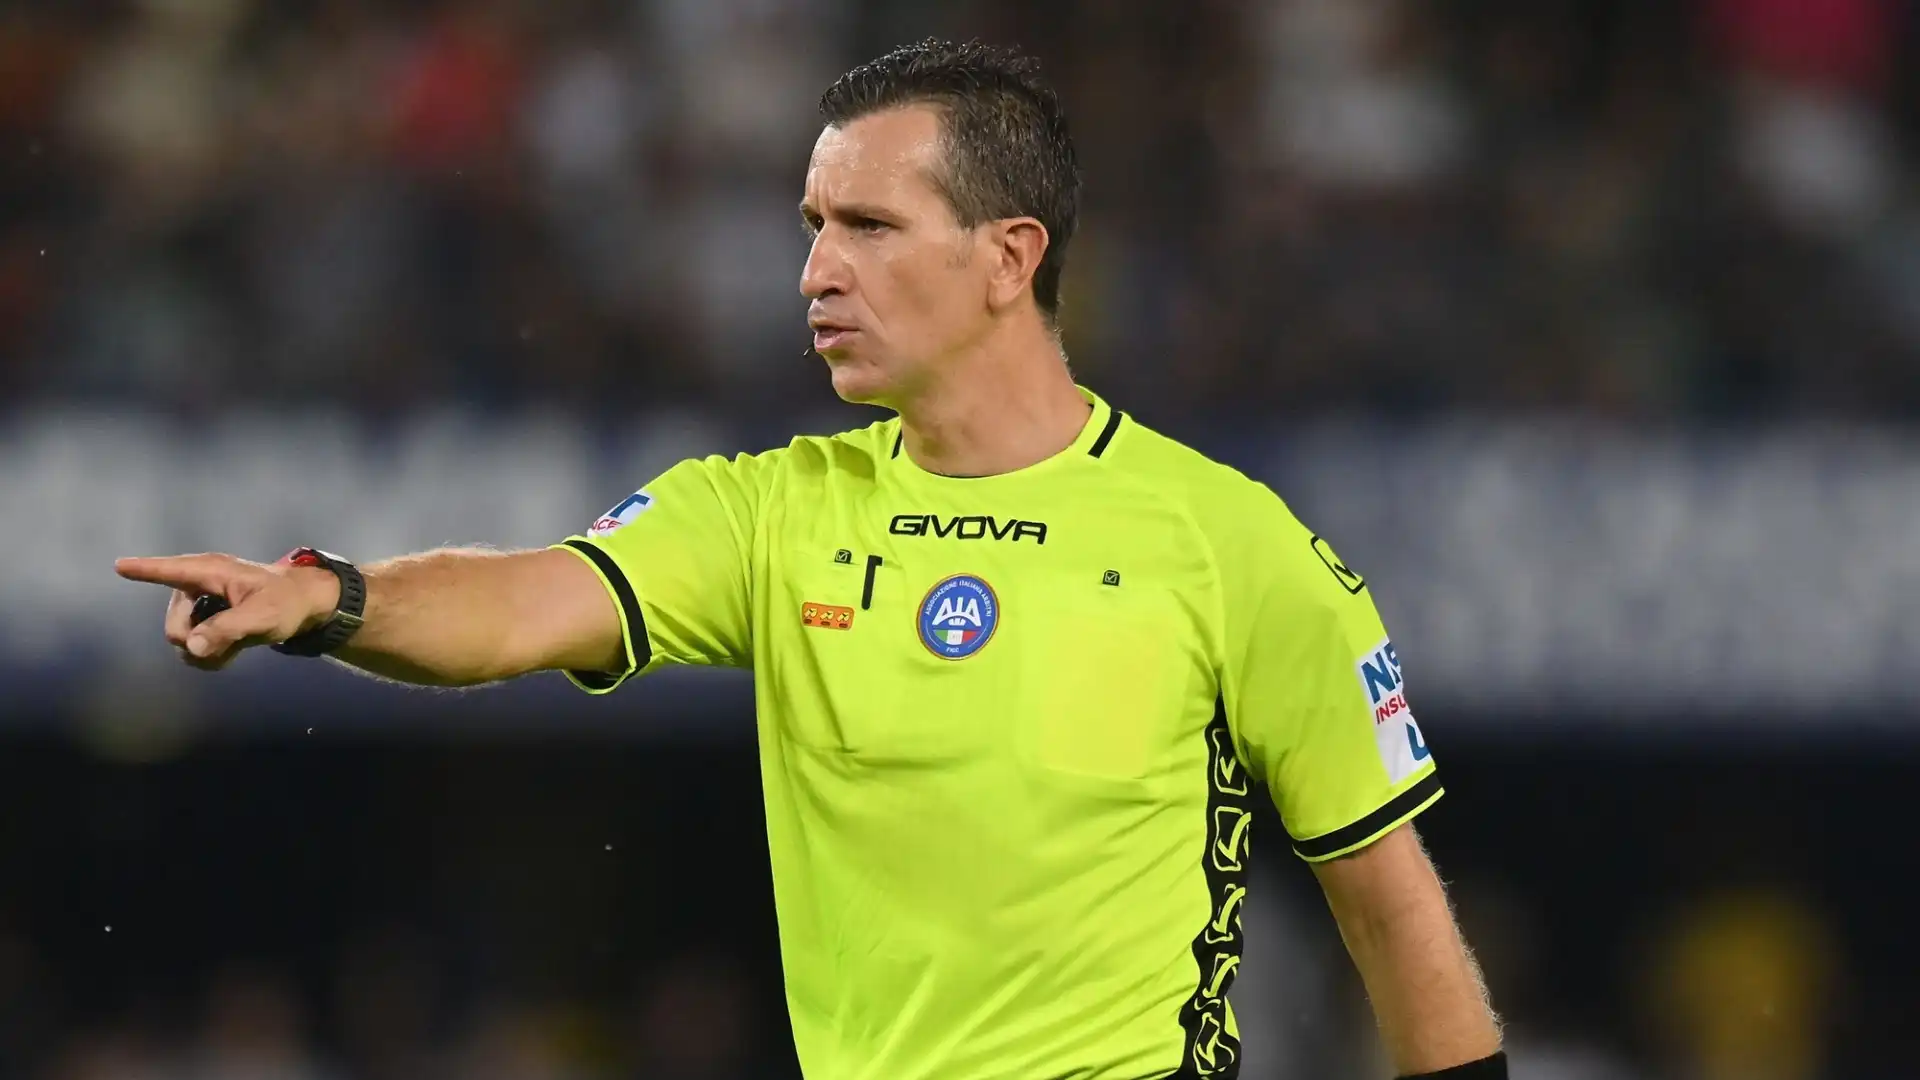 L'arbitro romano è sotto accusa per aver convalidato il gol dell'Inter